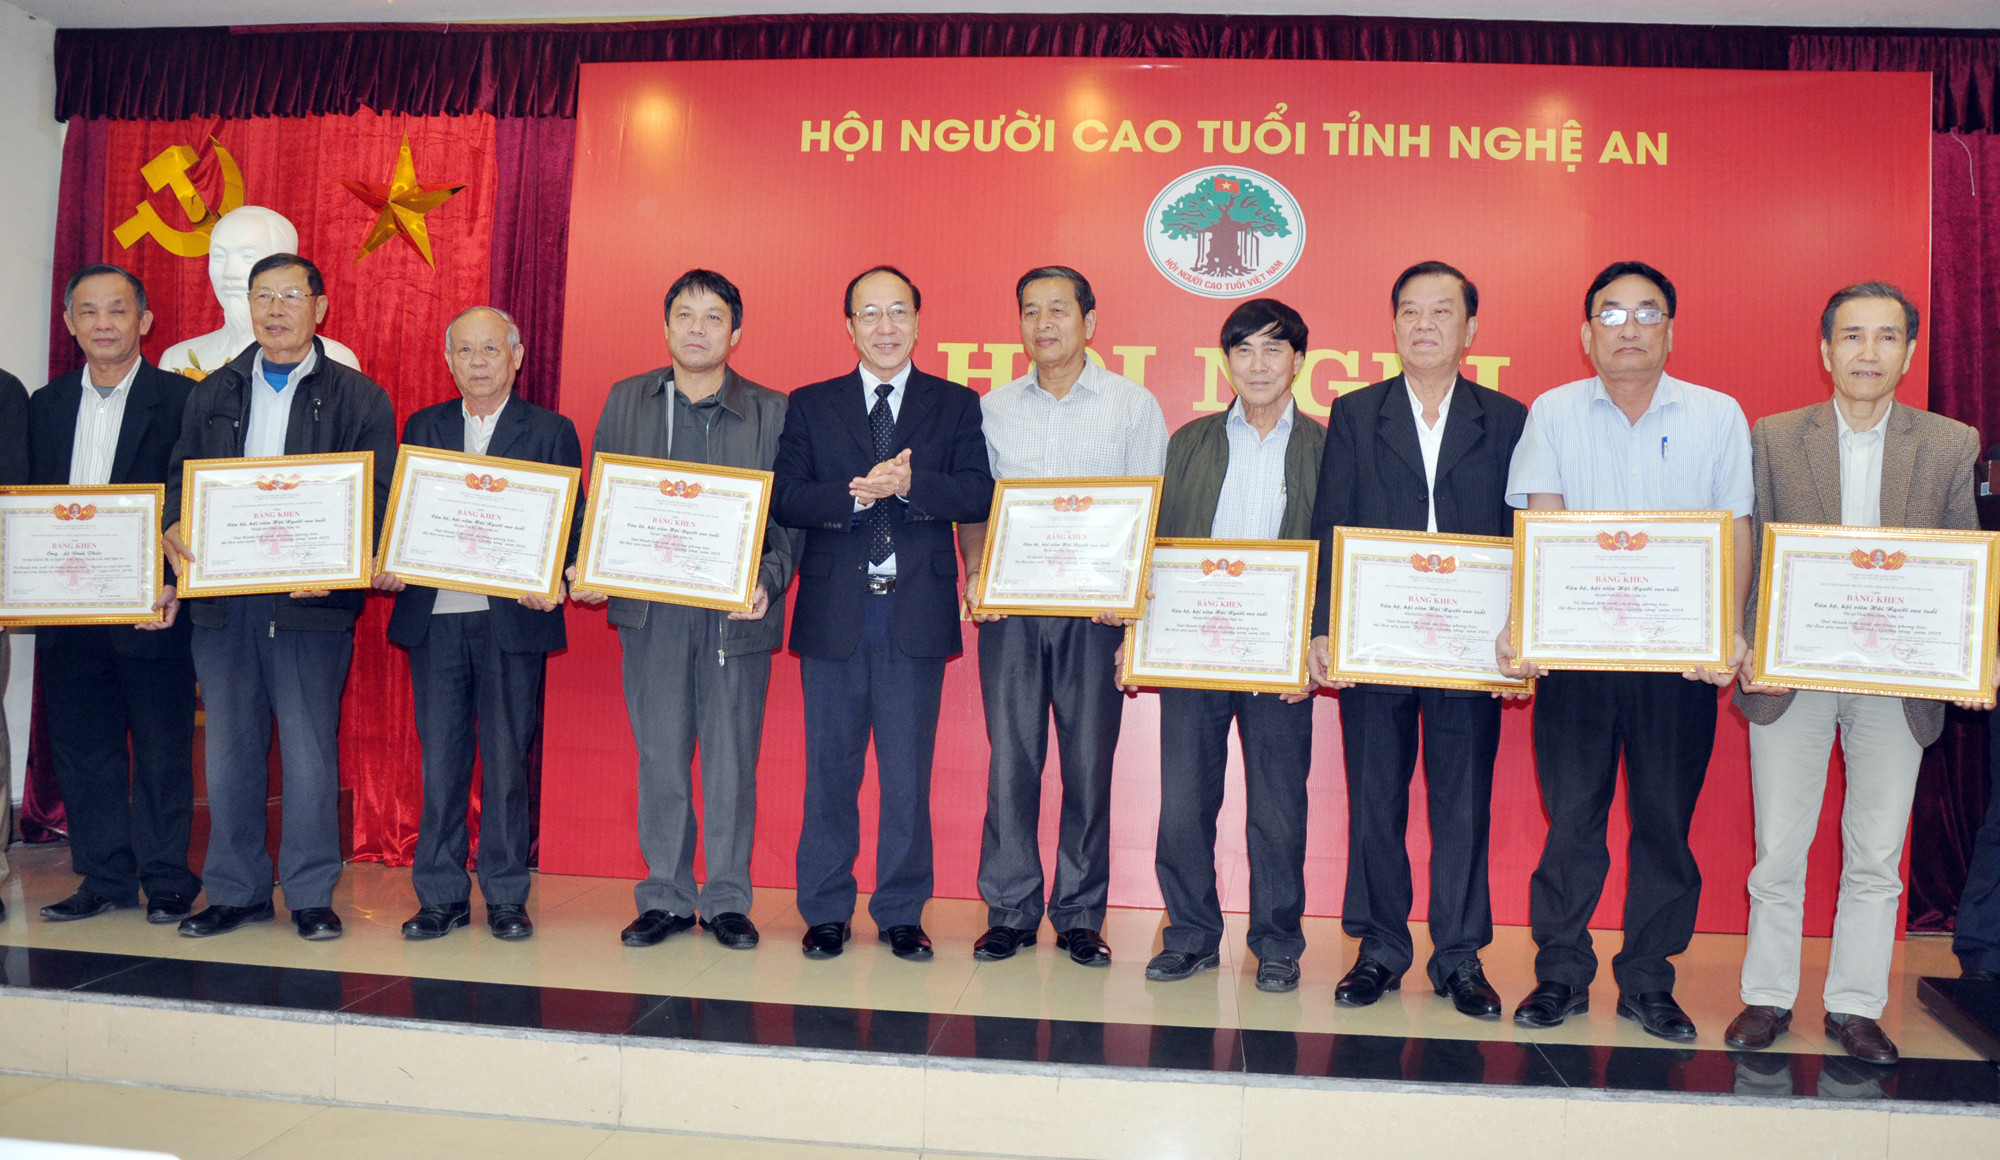 Đồng chí Nguyễn Hòa Bình – Phó Chủ tịch Hội Người cao  tuổi Việt Nam tặng Bằng khen cho các tập thể đạt thành tích xuất sắc. Ảnh: CK